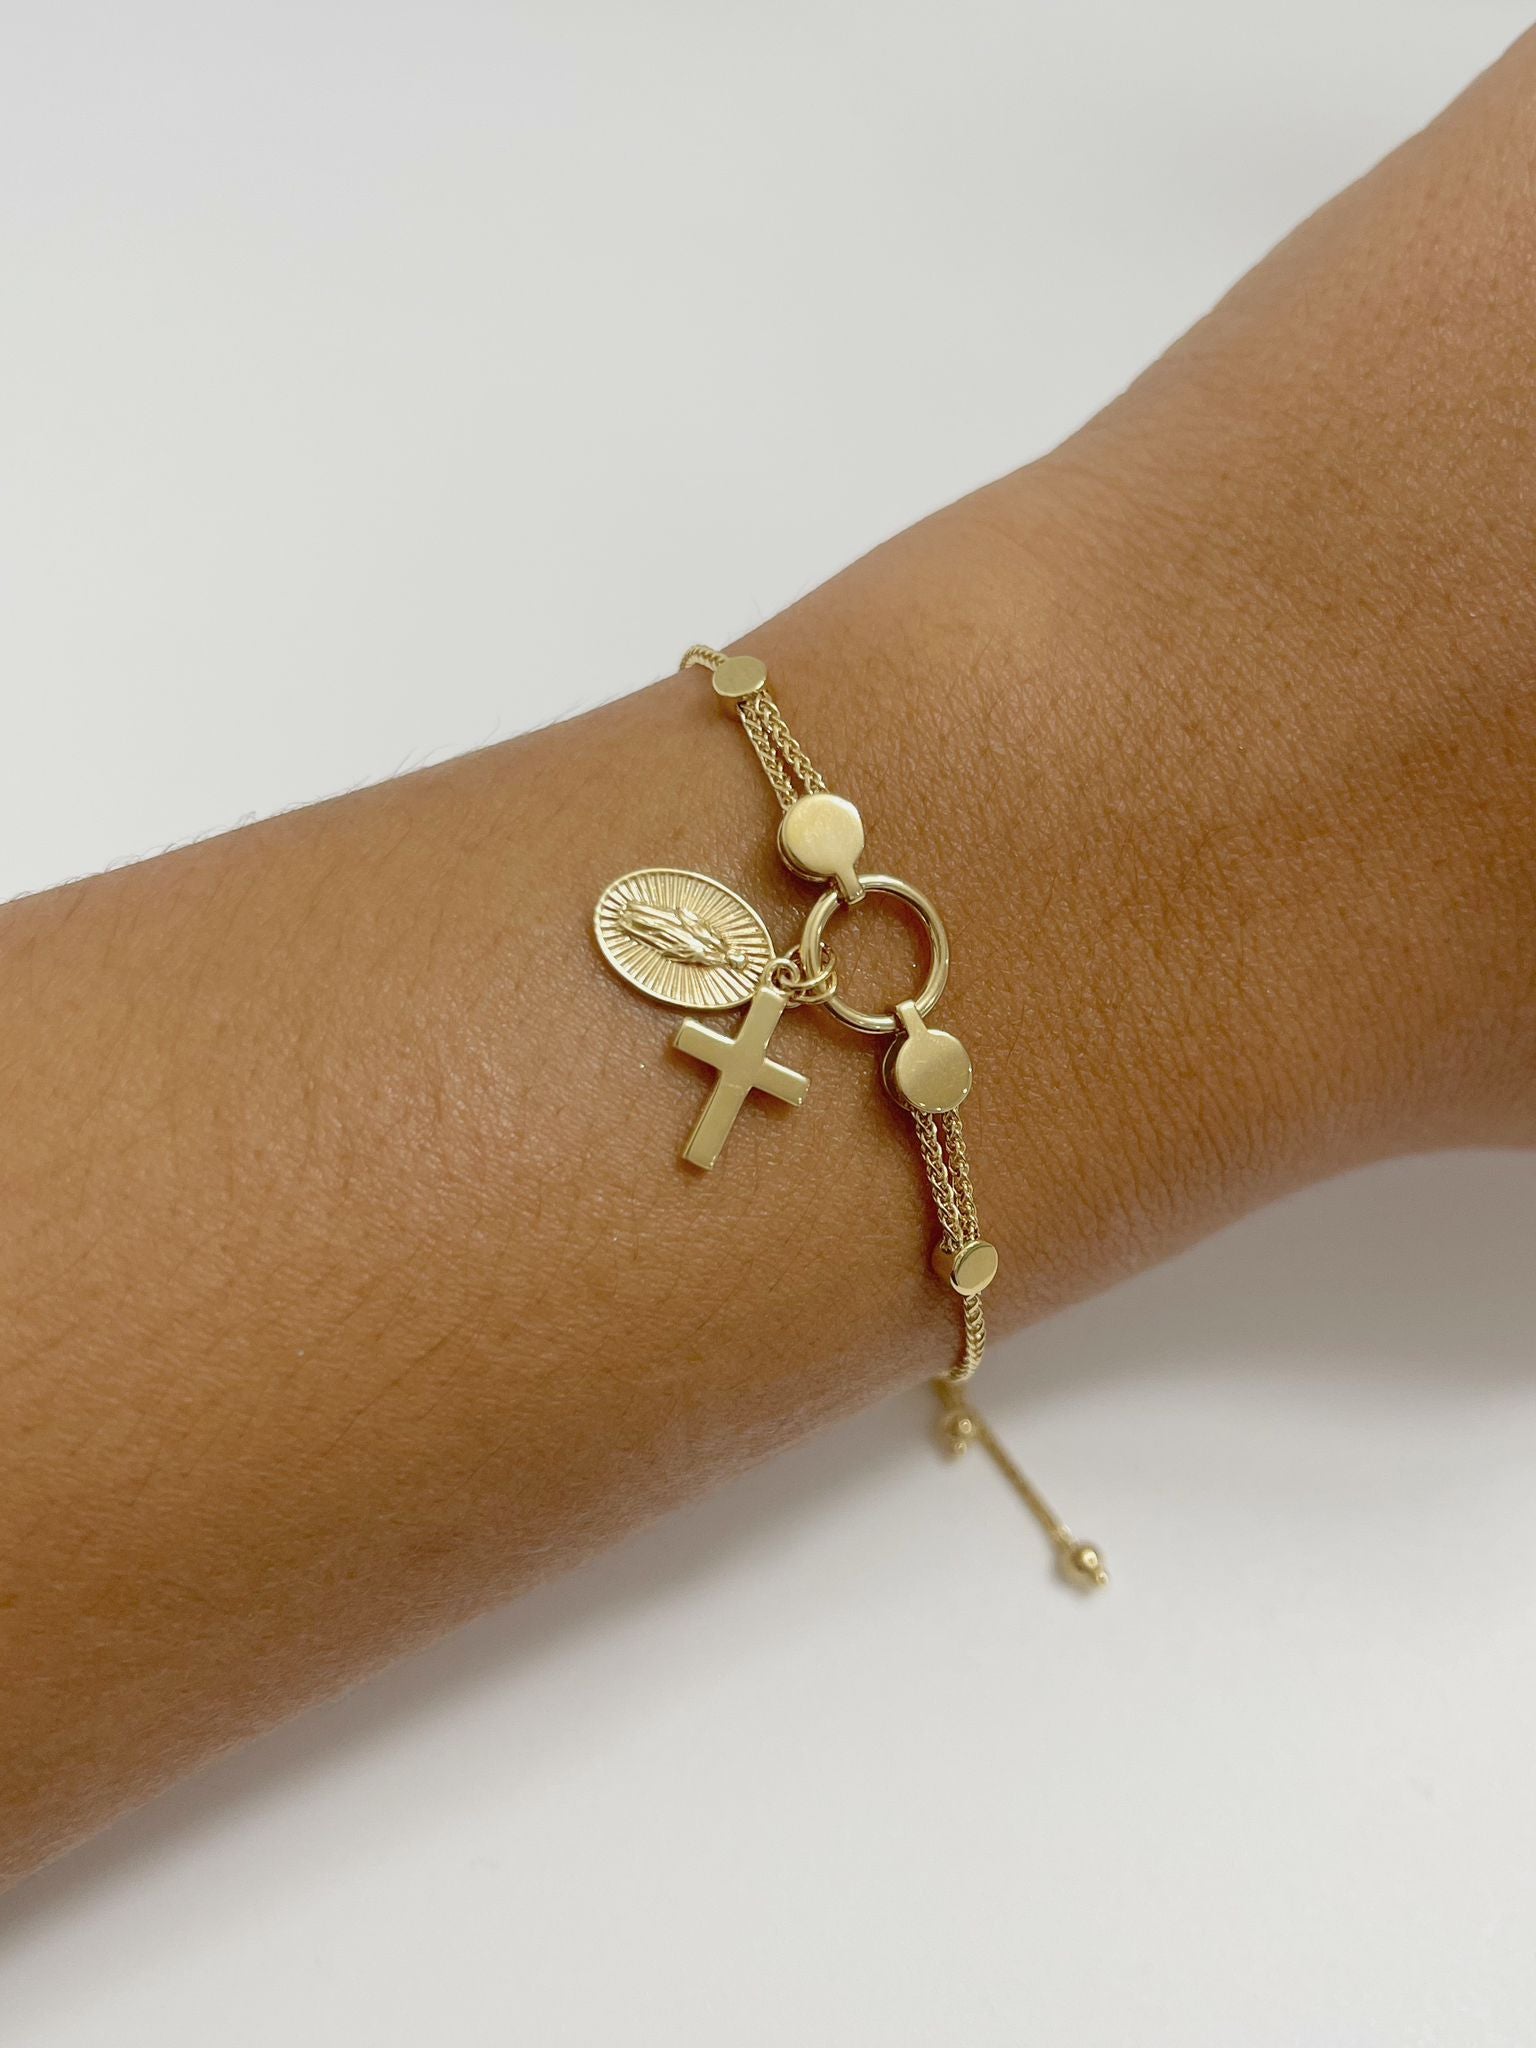 Religious gold bracelet